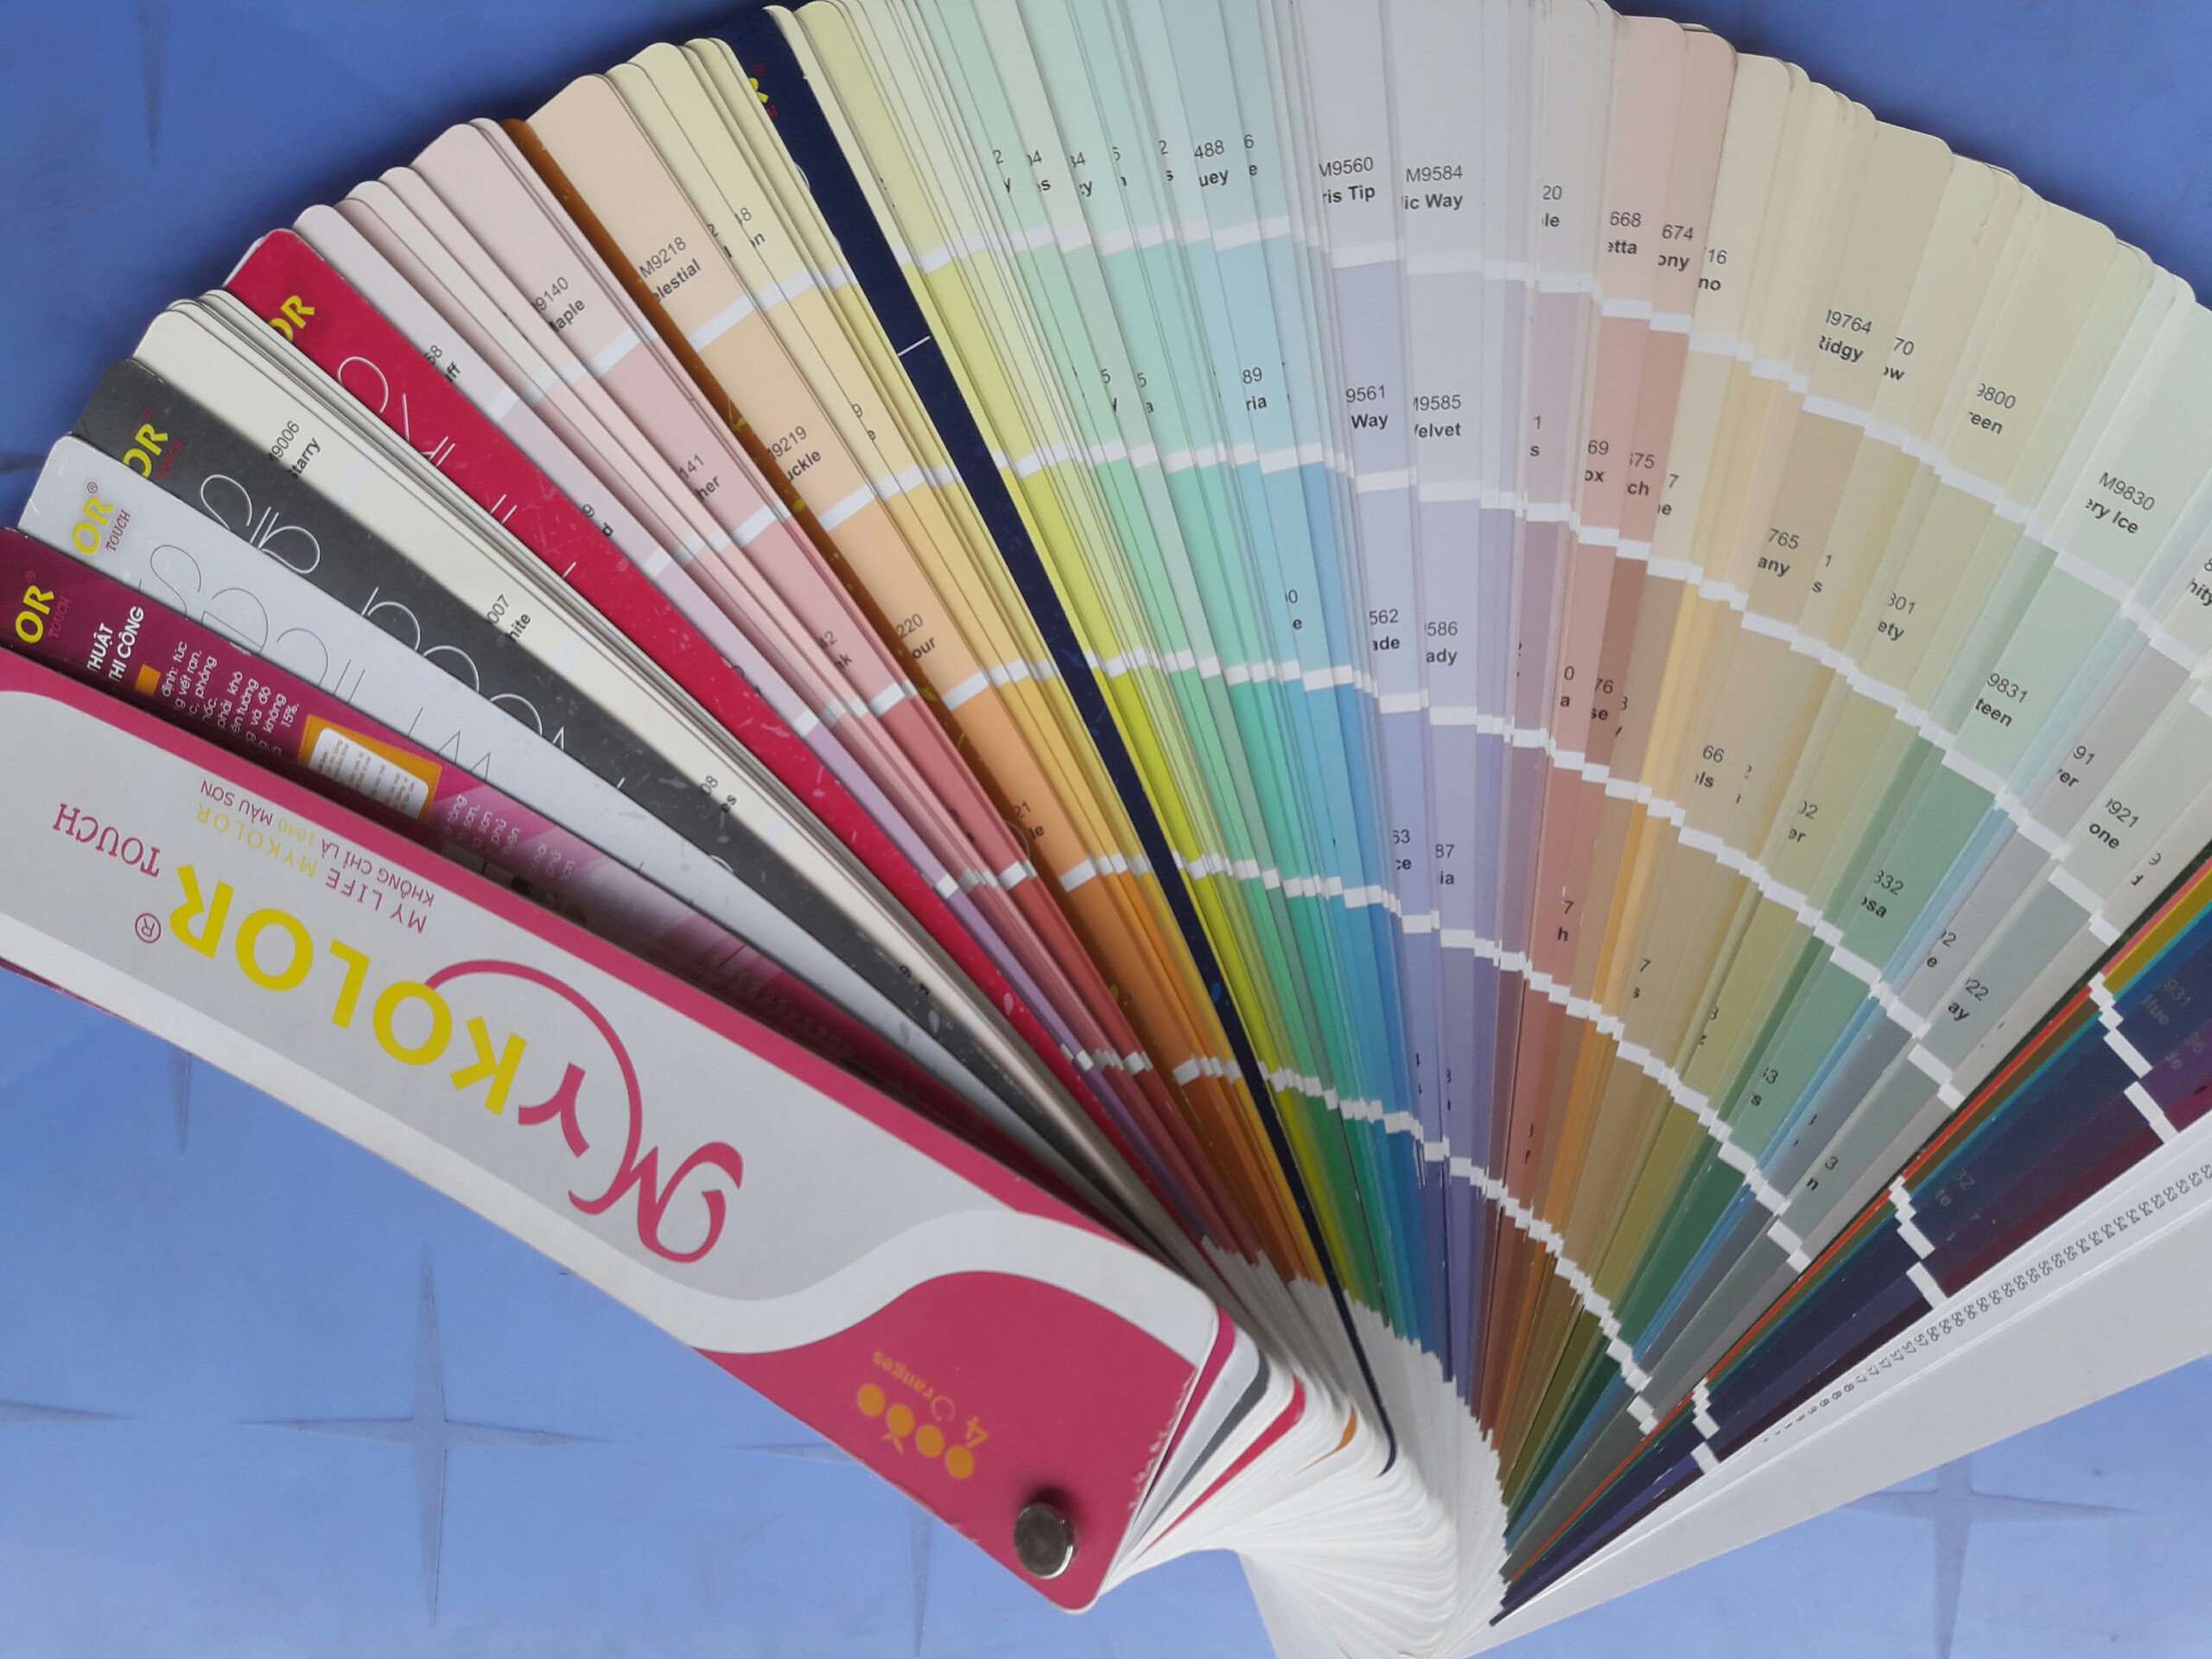 Bảng màu sơn Mykolor nội thất và ngoại thất: Mykolor không chỉ mang đến dòng sản phẩm đa dạng về chủng loại, mà còn có bảng màu sắc nội thất và ngoại thất đa dạng và phong phú. Hãy xem hình ảnh liên quan để trải nghiệm sự đa dạng về màu sắc cũng như chất lượng của sản phẩm Mykolor.